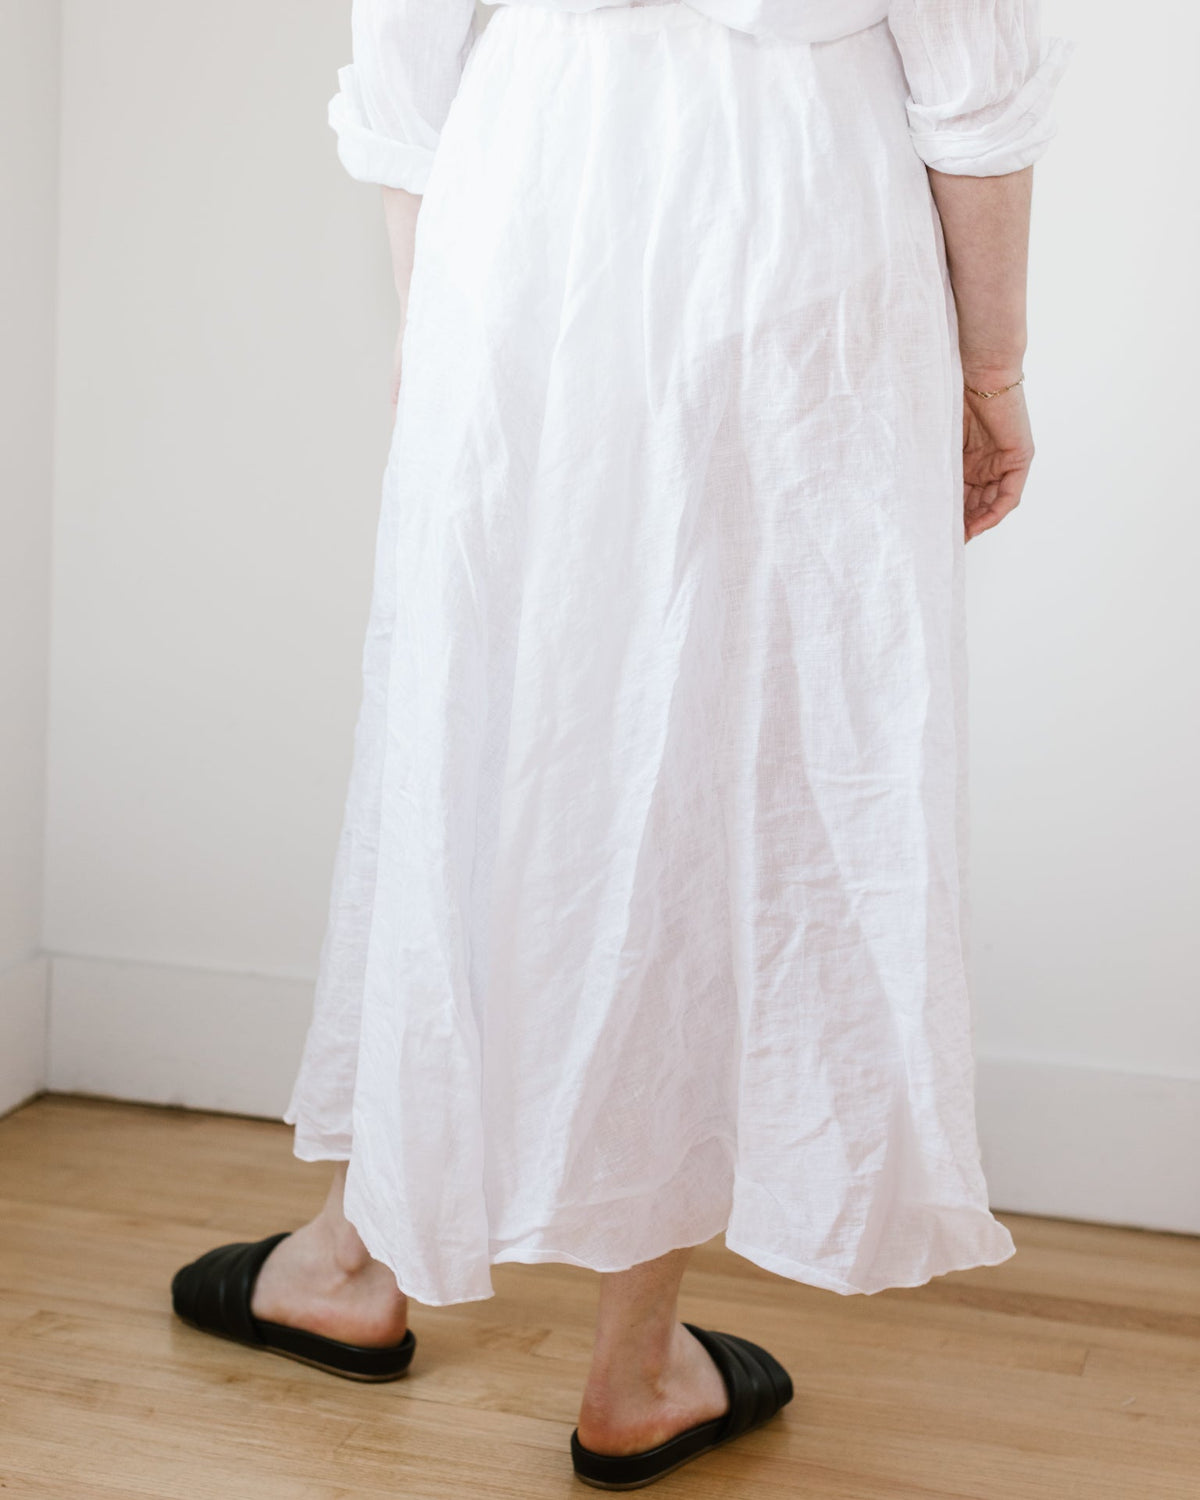 CP Shades Clothing Deidra Skirt in White Linen